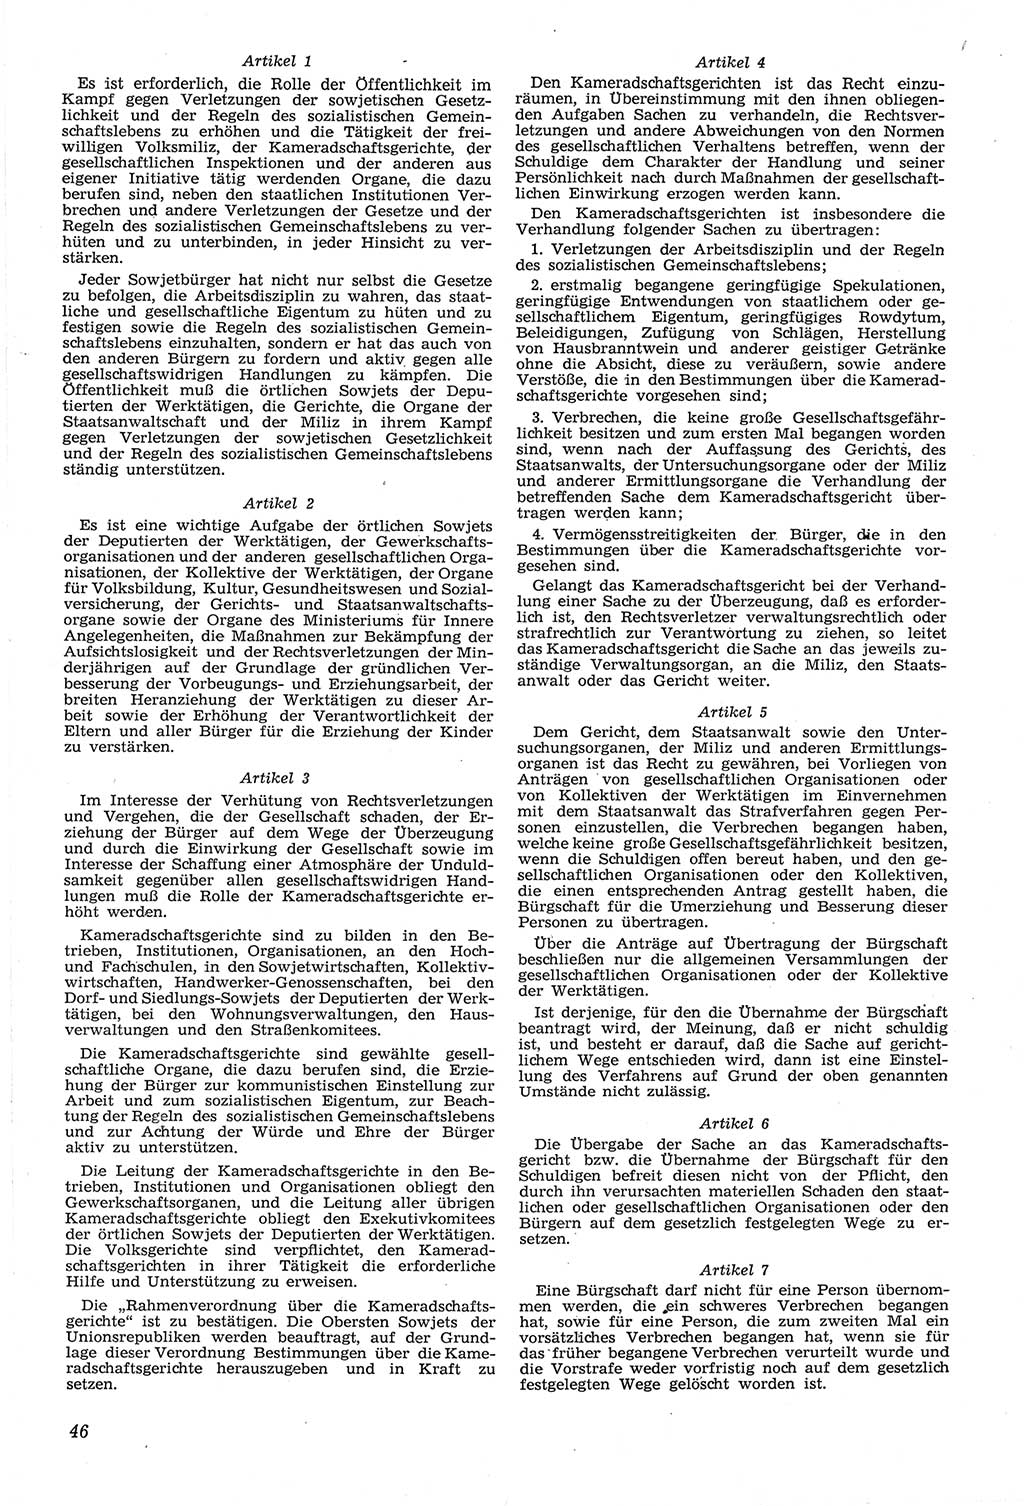 Neue Justiz (NJ), Zeitschrift für Recht und Rechtswissenschaft [Deutsche Demokratische Republik (DDR)], 14. Jahrgang 1960, Seite 46 (NJ DDR 1960, S. 46)